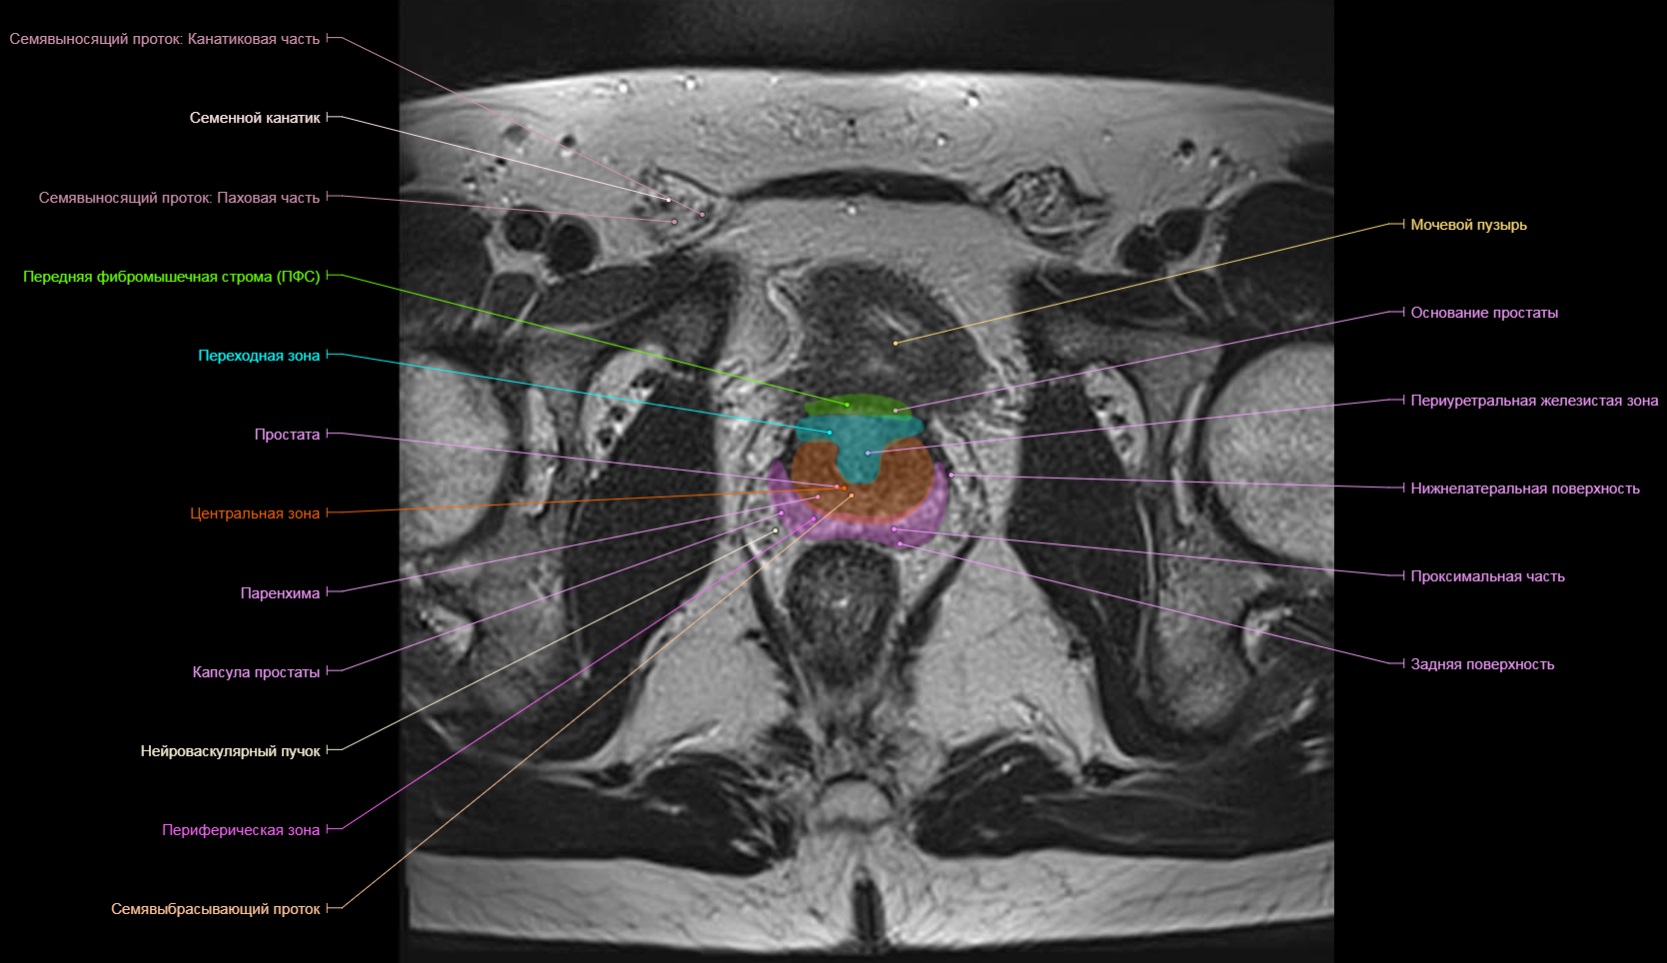 Транзиторная зона предстательной железы. Сегменты предстательной железы мрт. Анатомия предстательной железы мрт схема. Зональная анатомия предстательной железы мрт. Зональное строение предстательной железы мрт.